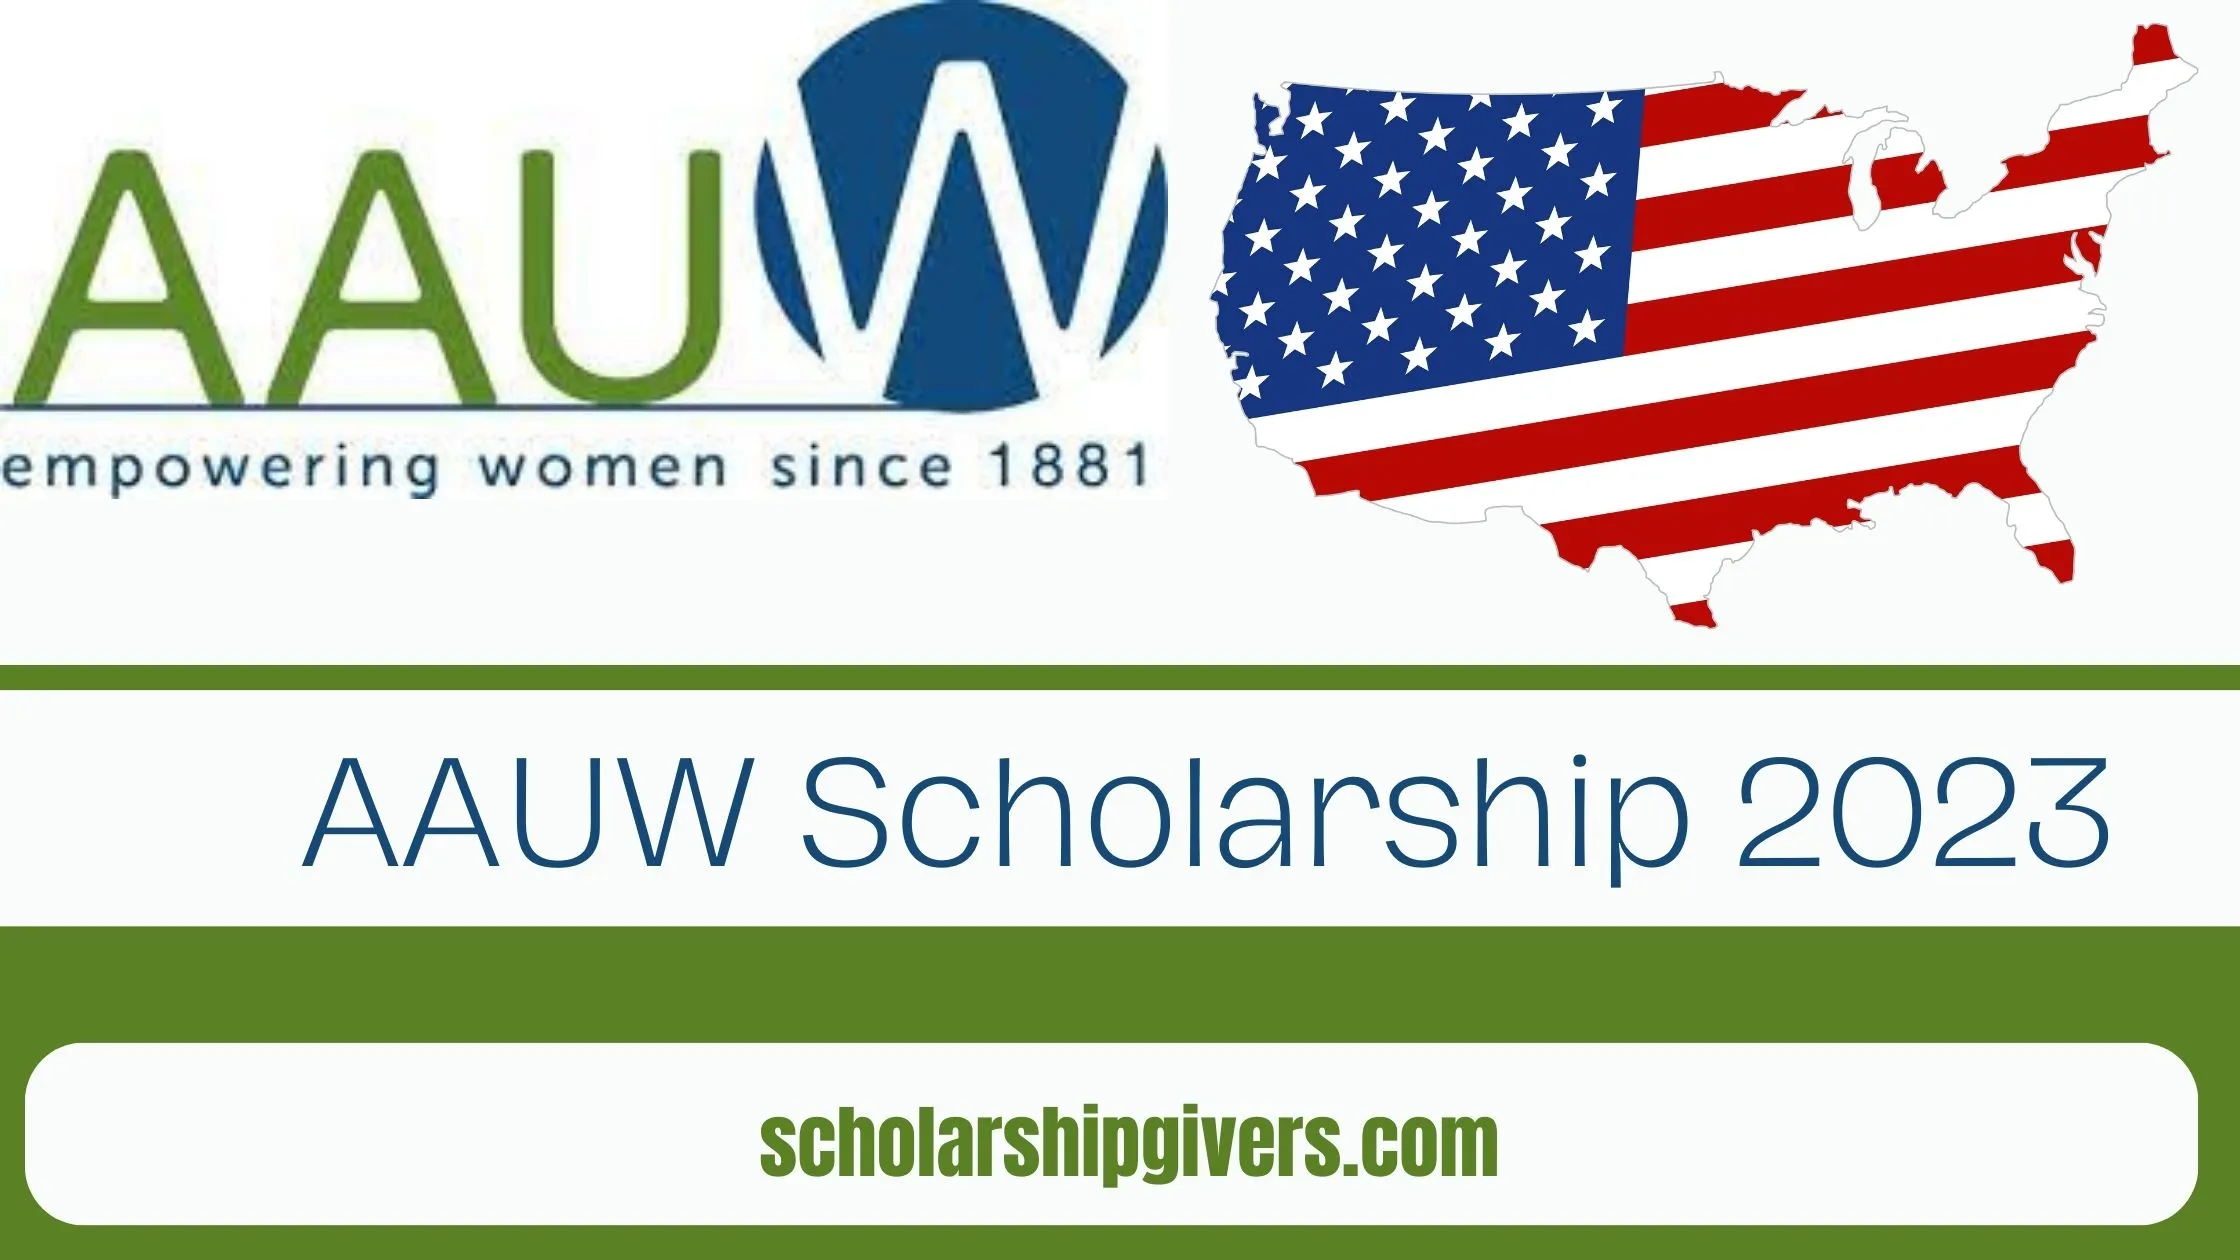 AAUW International Fellowship Program 2024